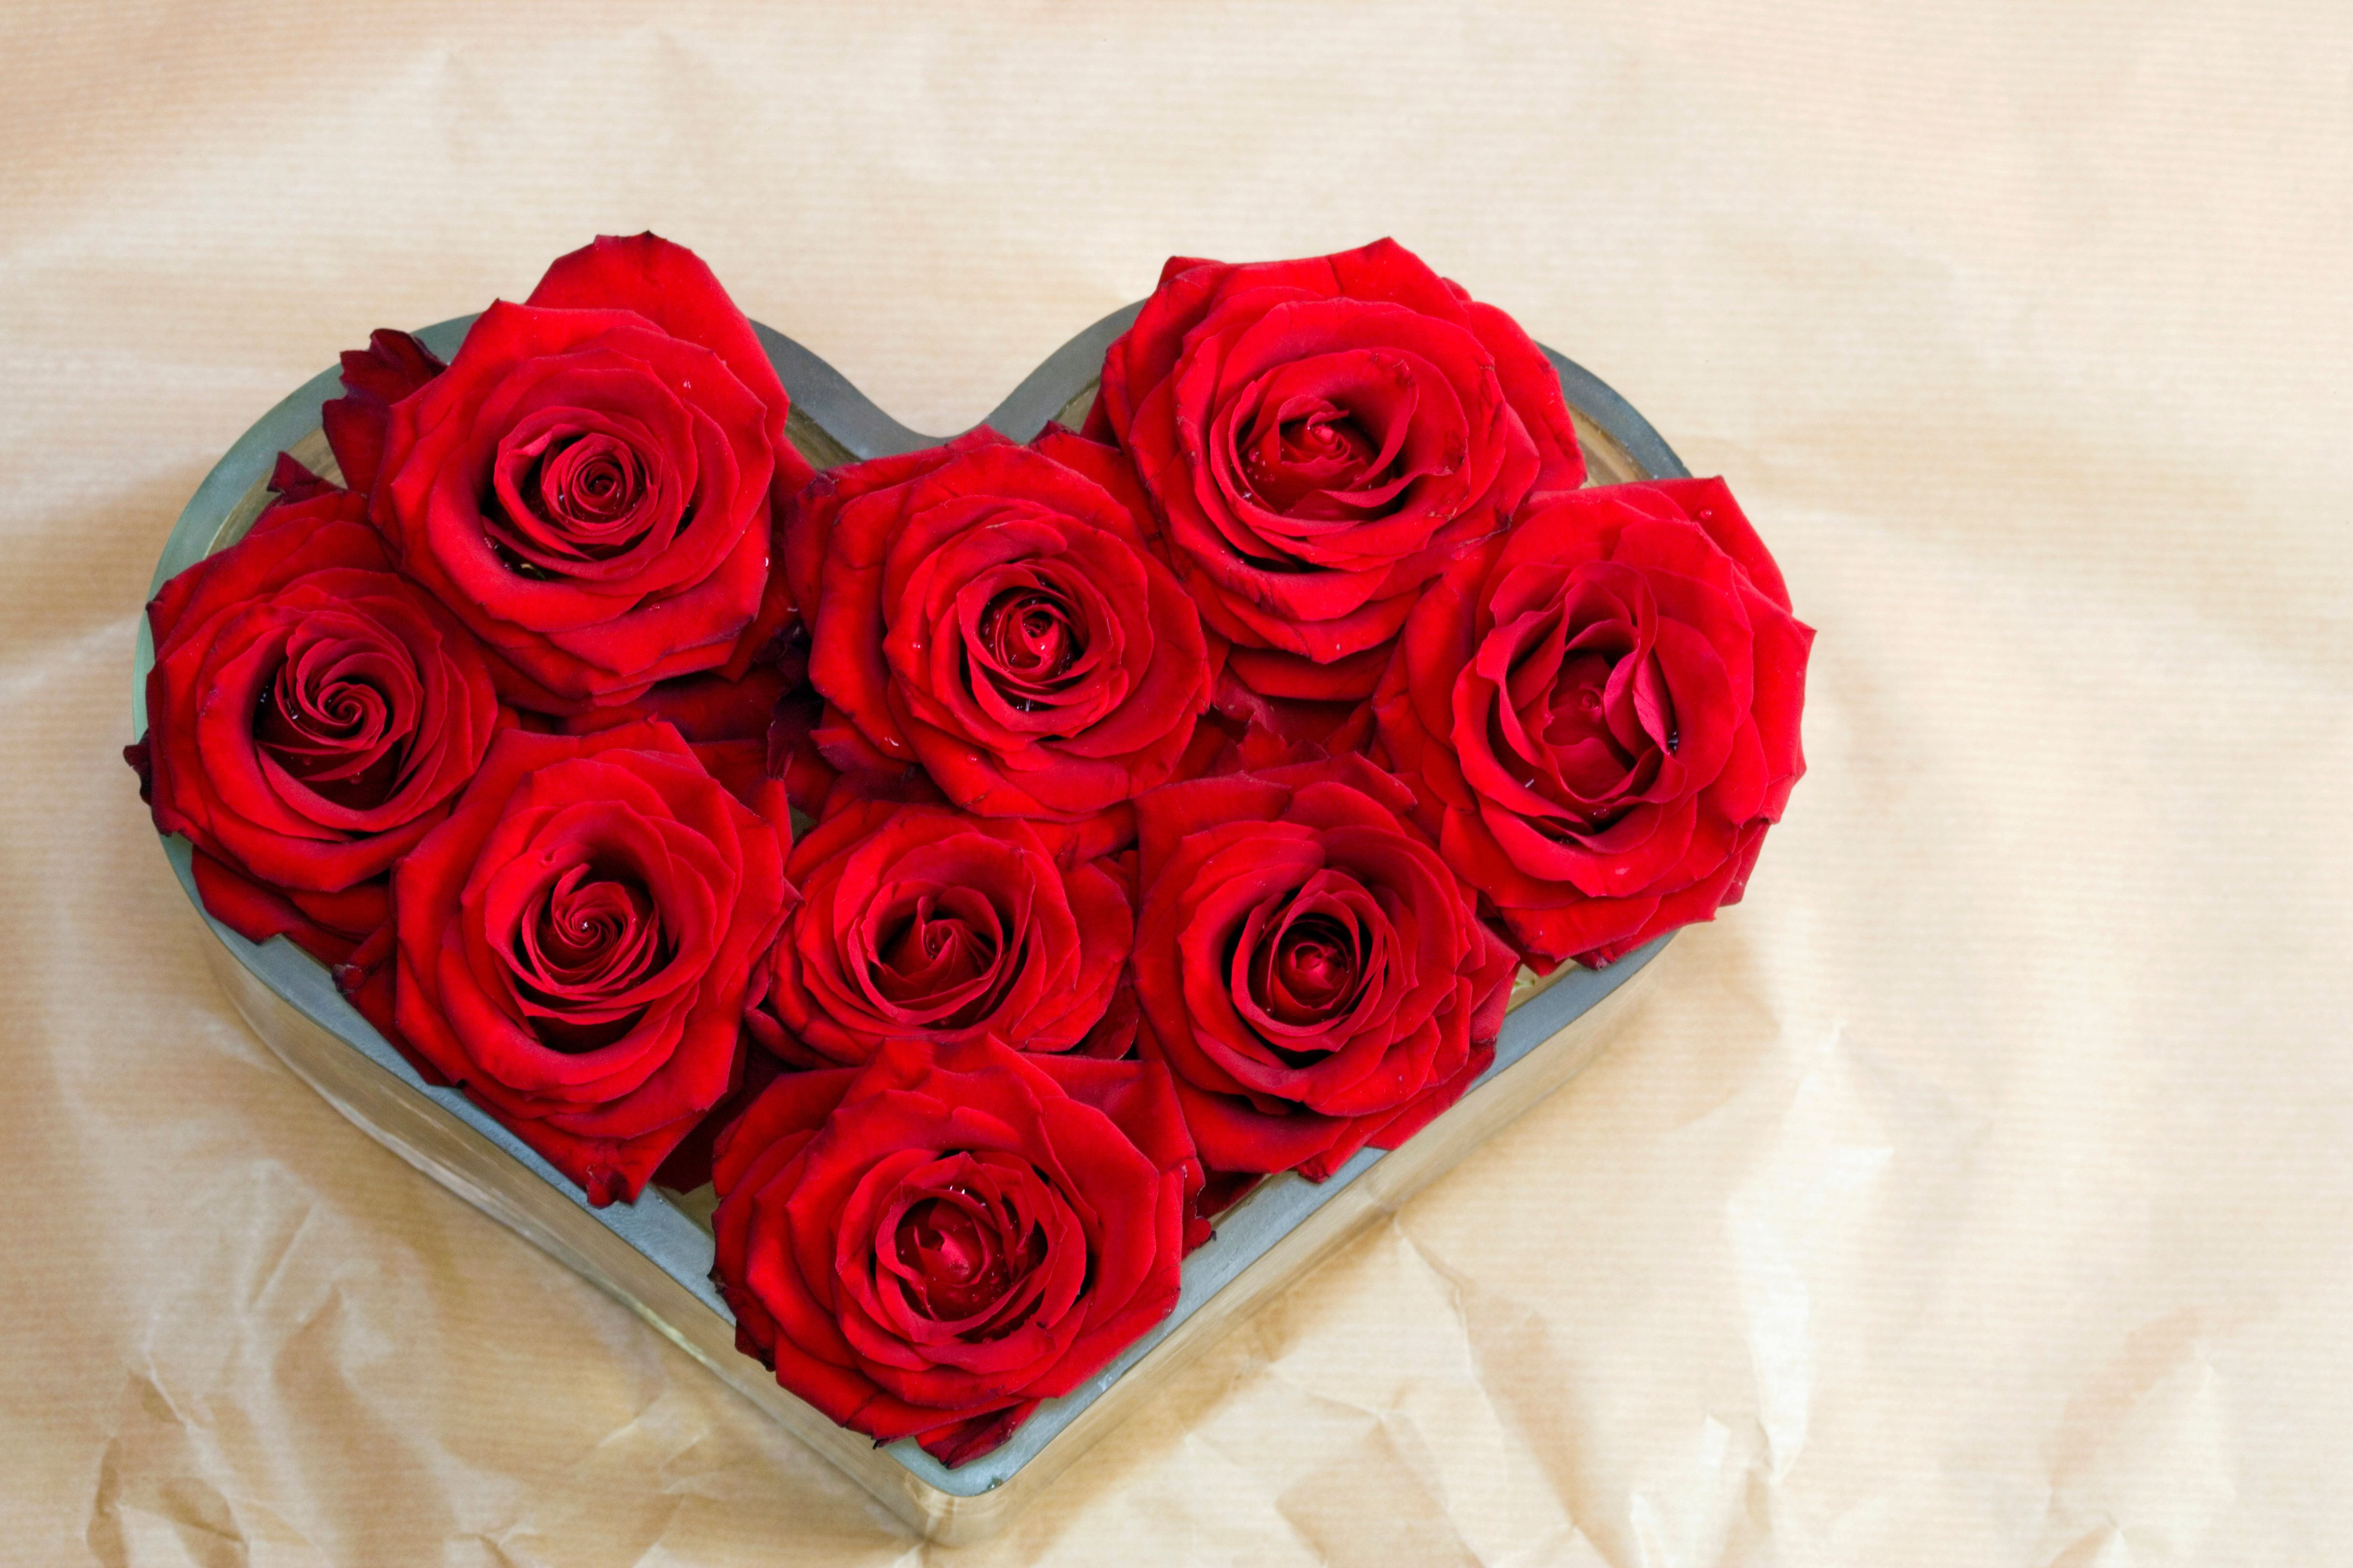 Кирмизи гуллар. Красные розы. Букет роз. Красивый букет роз. Букет красных роз.